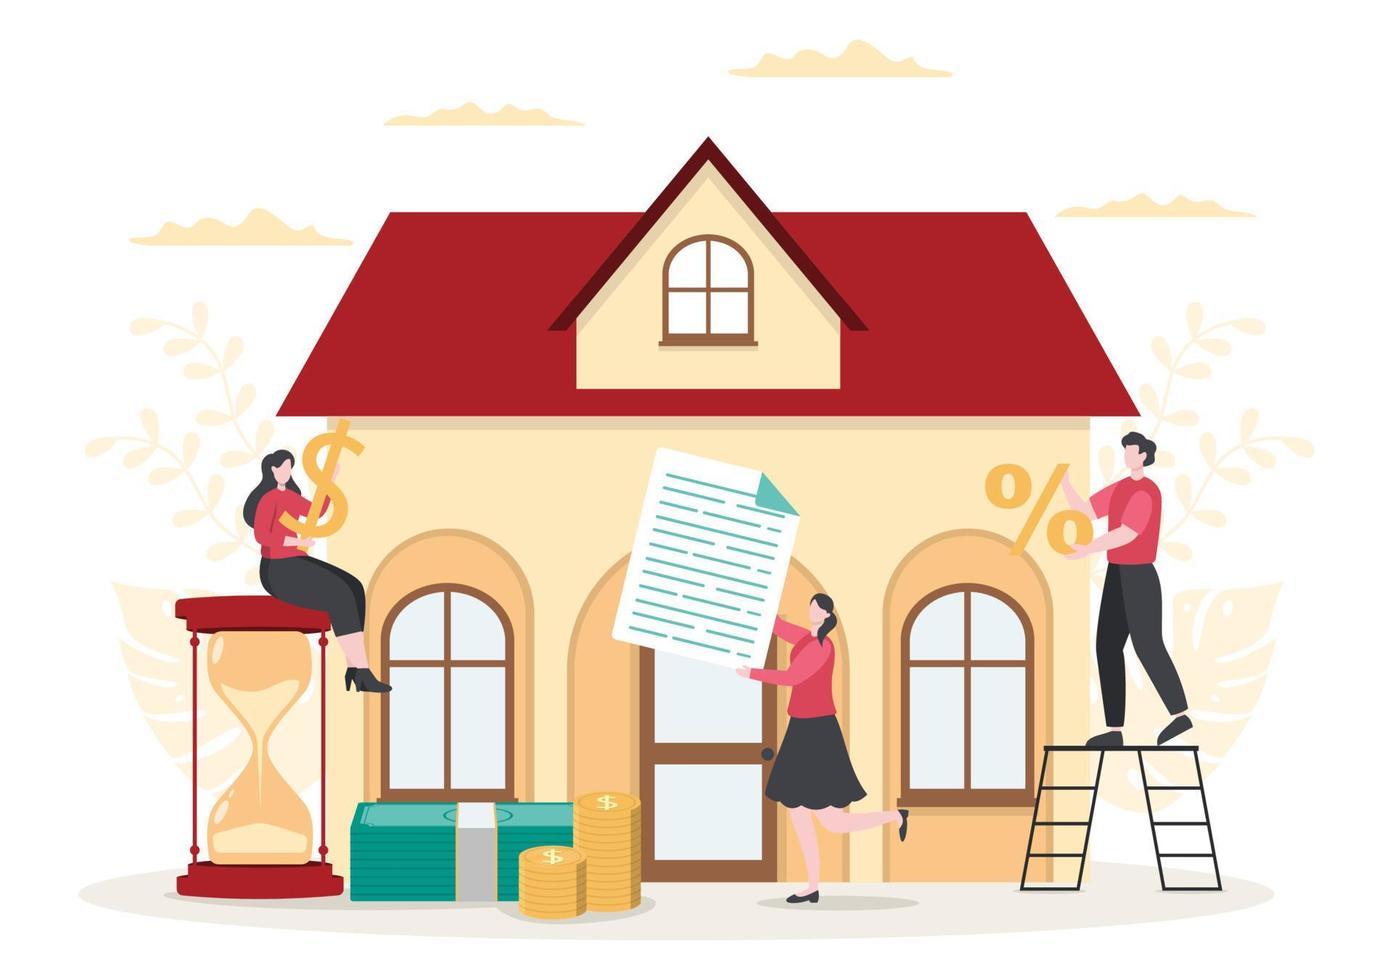 strumenti di debito di prestito ipotecario che sono garantiti da beni immobiliari come servizi immobiliari, affitto, acquisto di casa o casa d'aste. illustrazione vettoriale di sfondo